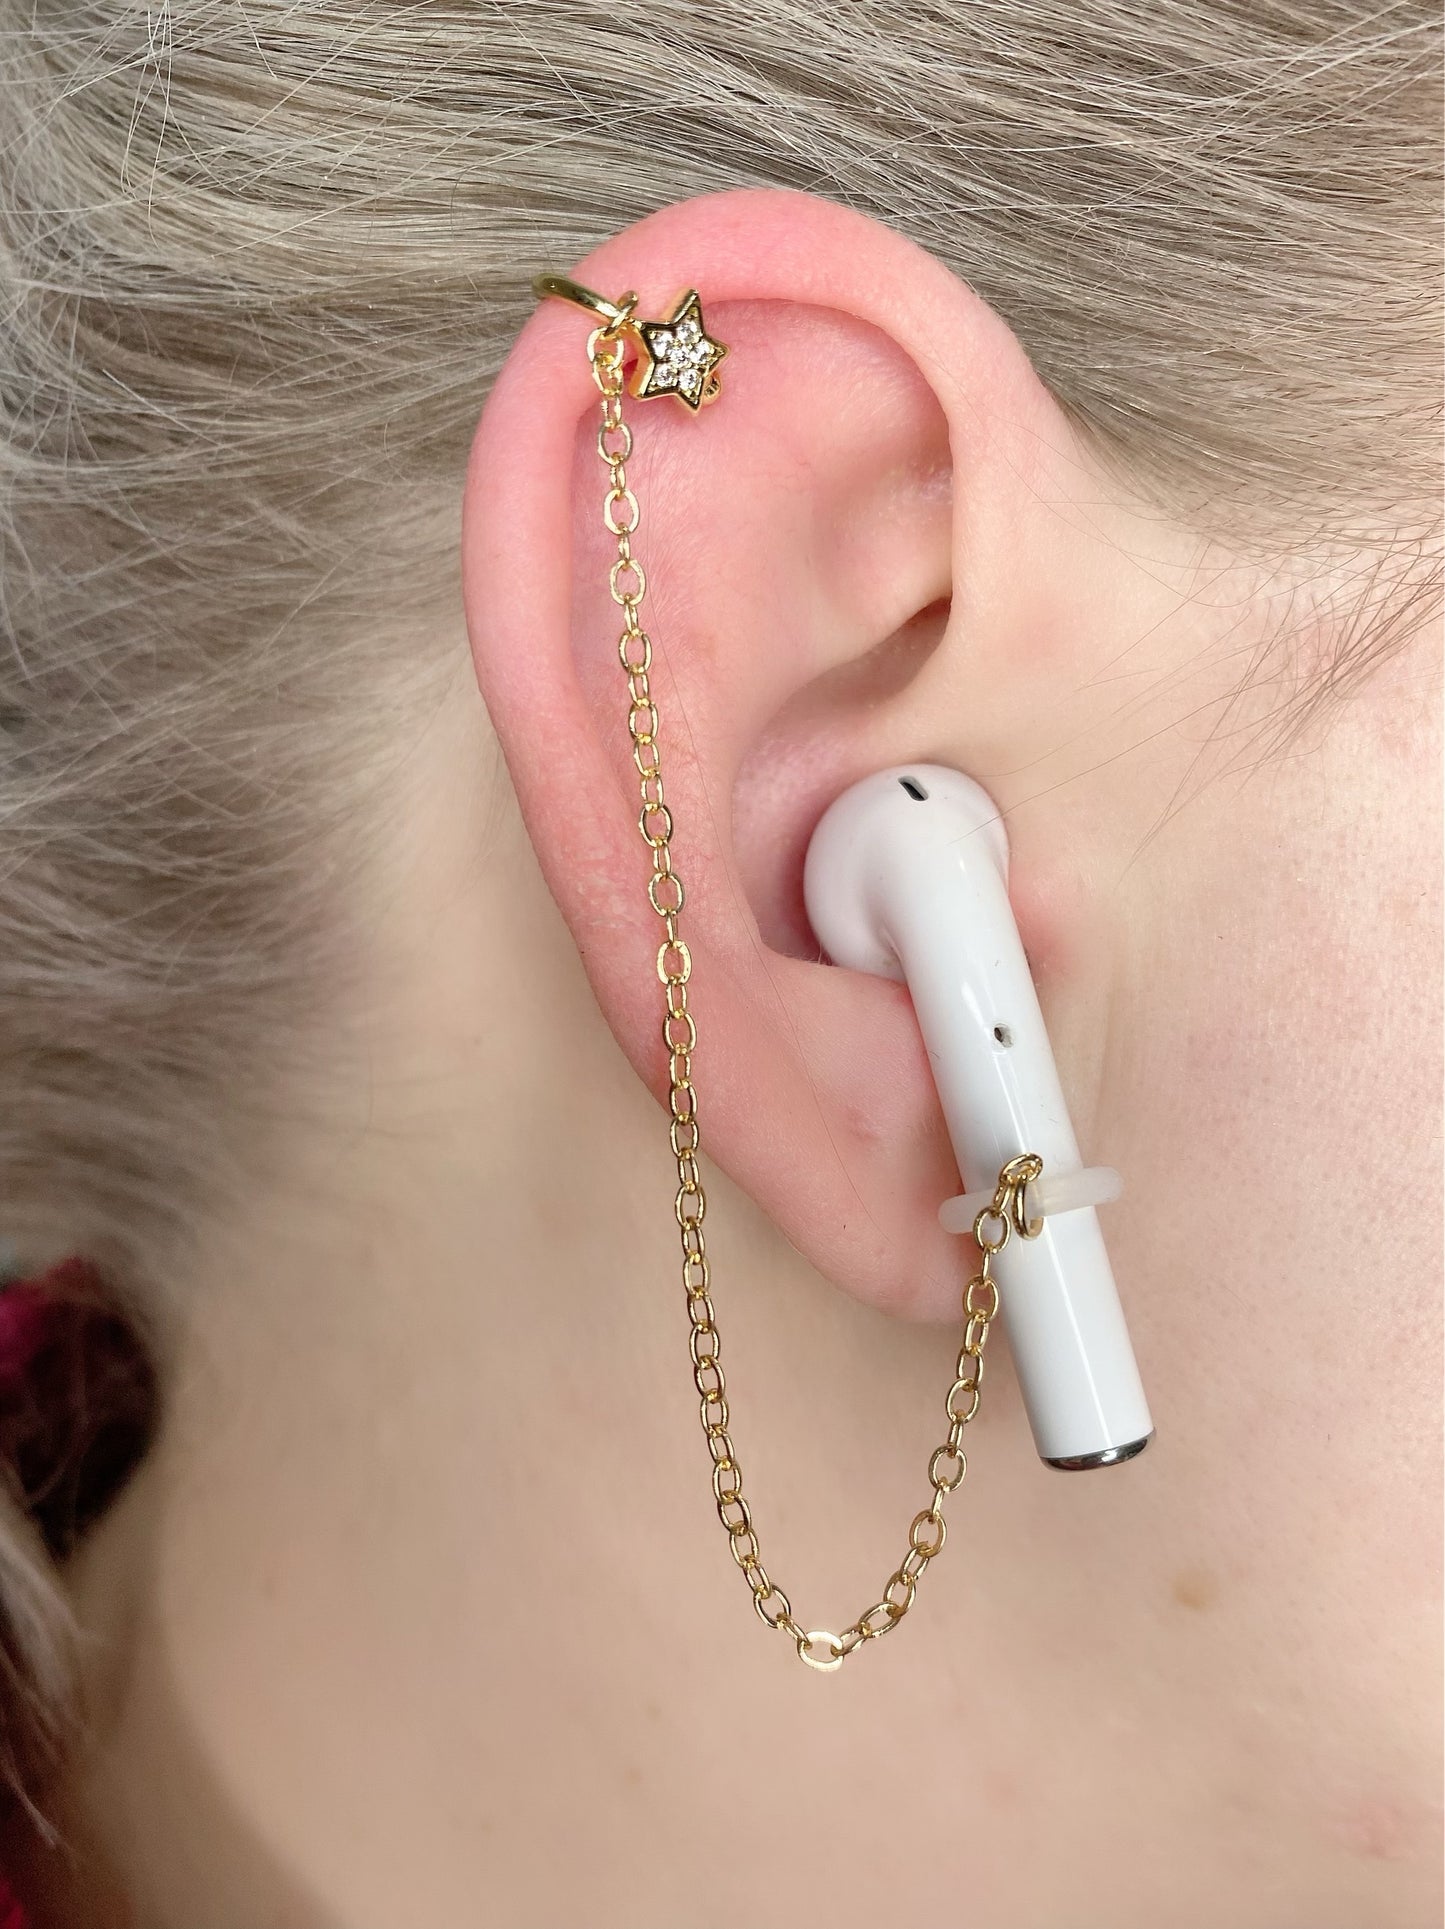 Herz- und Stern-EarLinks (Ohrmanschette) – kabellose Ohrhörer